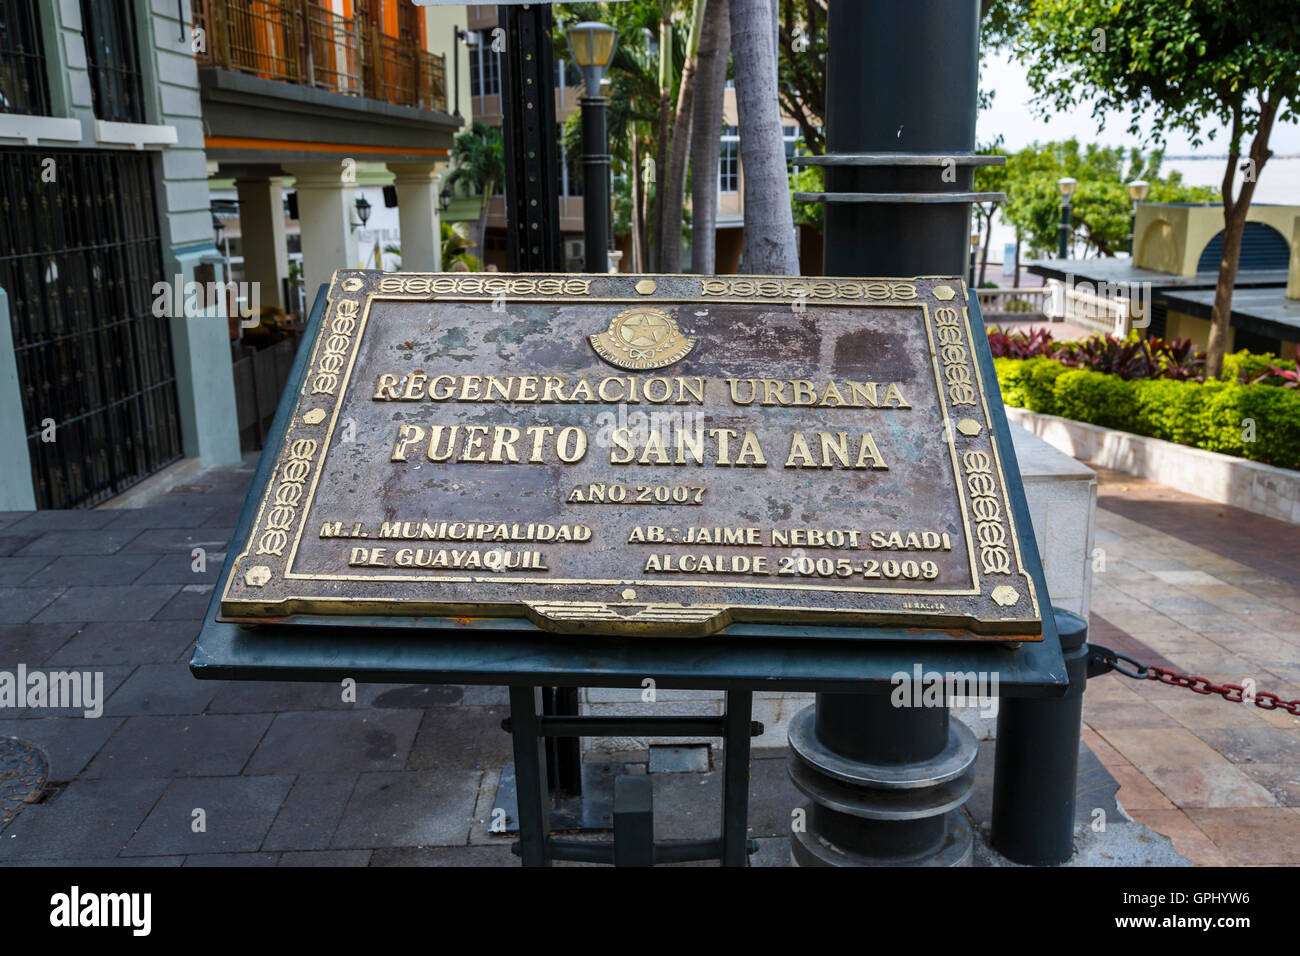 Cartel conmemorativo de la regeneración urbana zona de Puerto Santa Ana, segunda ciudad de Guayaquil, Ecuador, Sudamérica Foto de stock